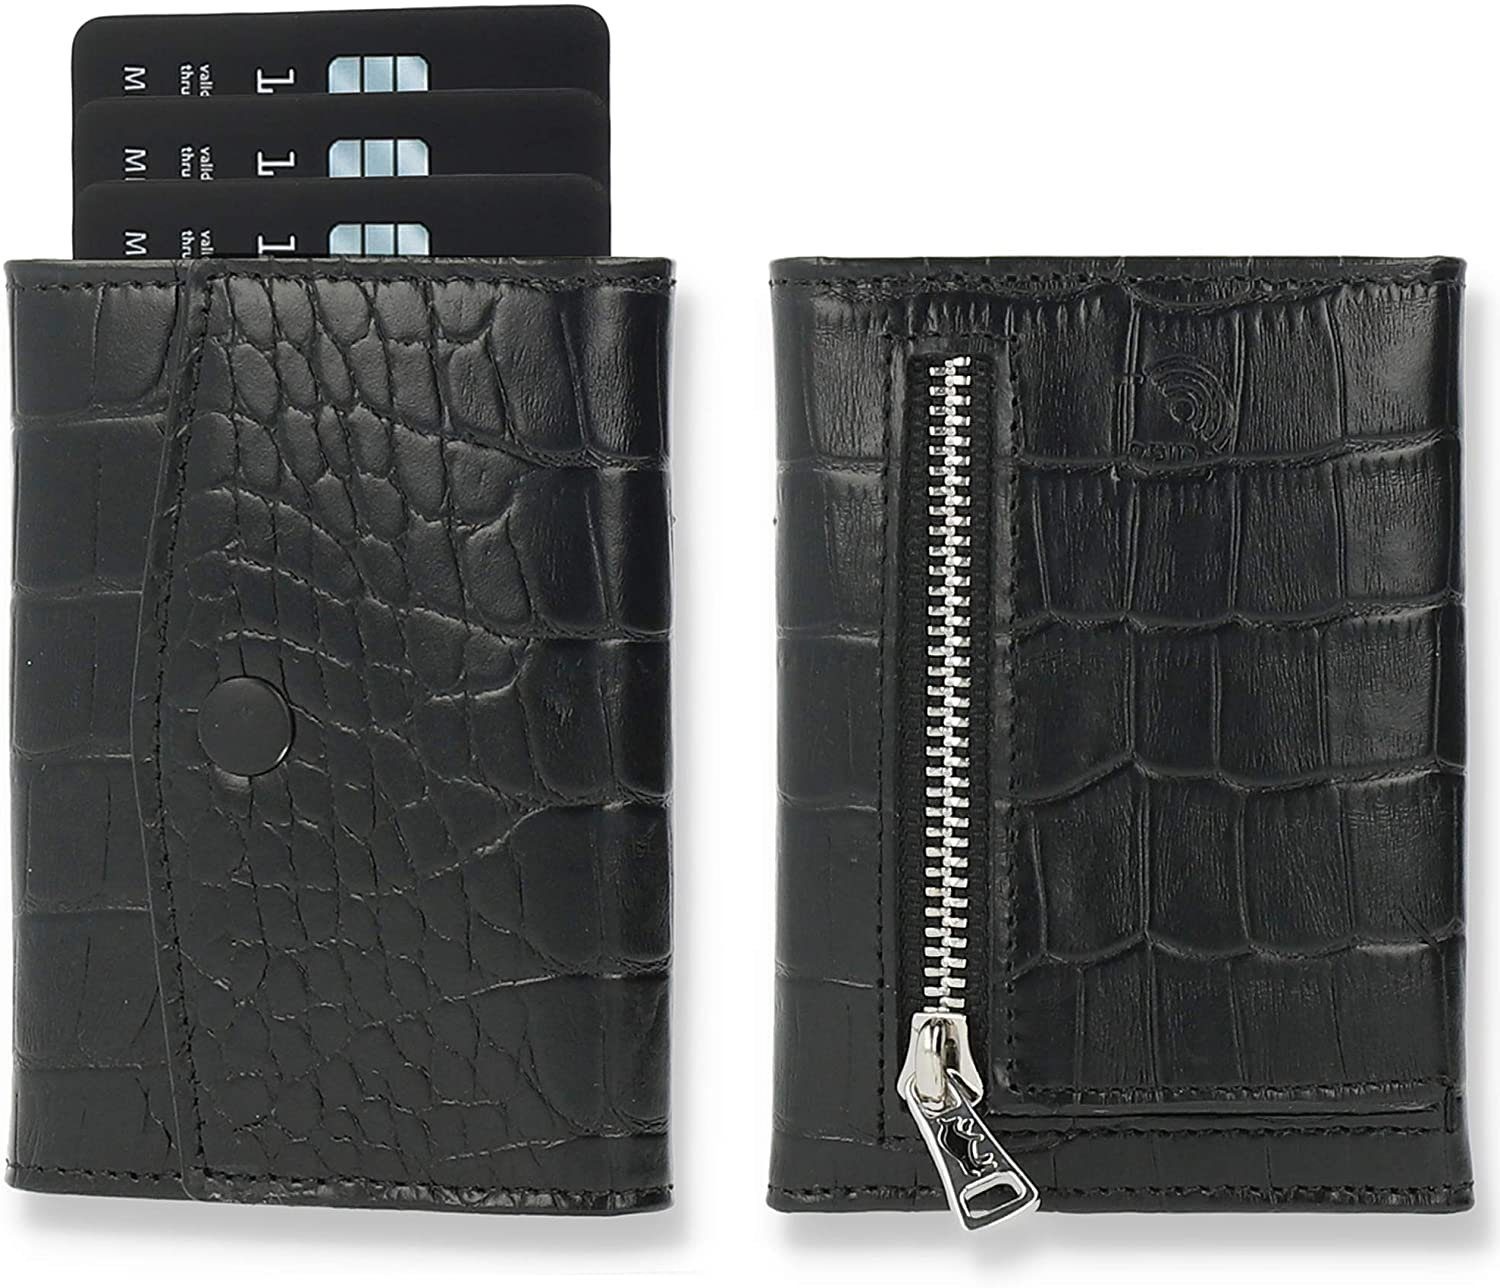 Solo Pelle Geldbörse Slim Wallet mit Münzfach I Geldbeutel mit RFID Schutz I für 12 Karten, RFID Schutz, Echtes Leder, dünne Geldbörse Krokoschwarz